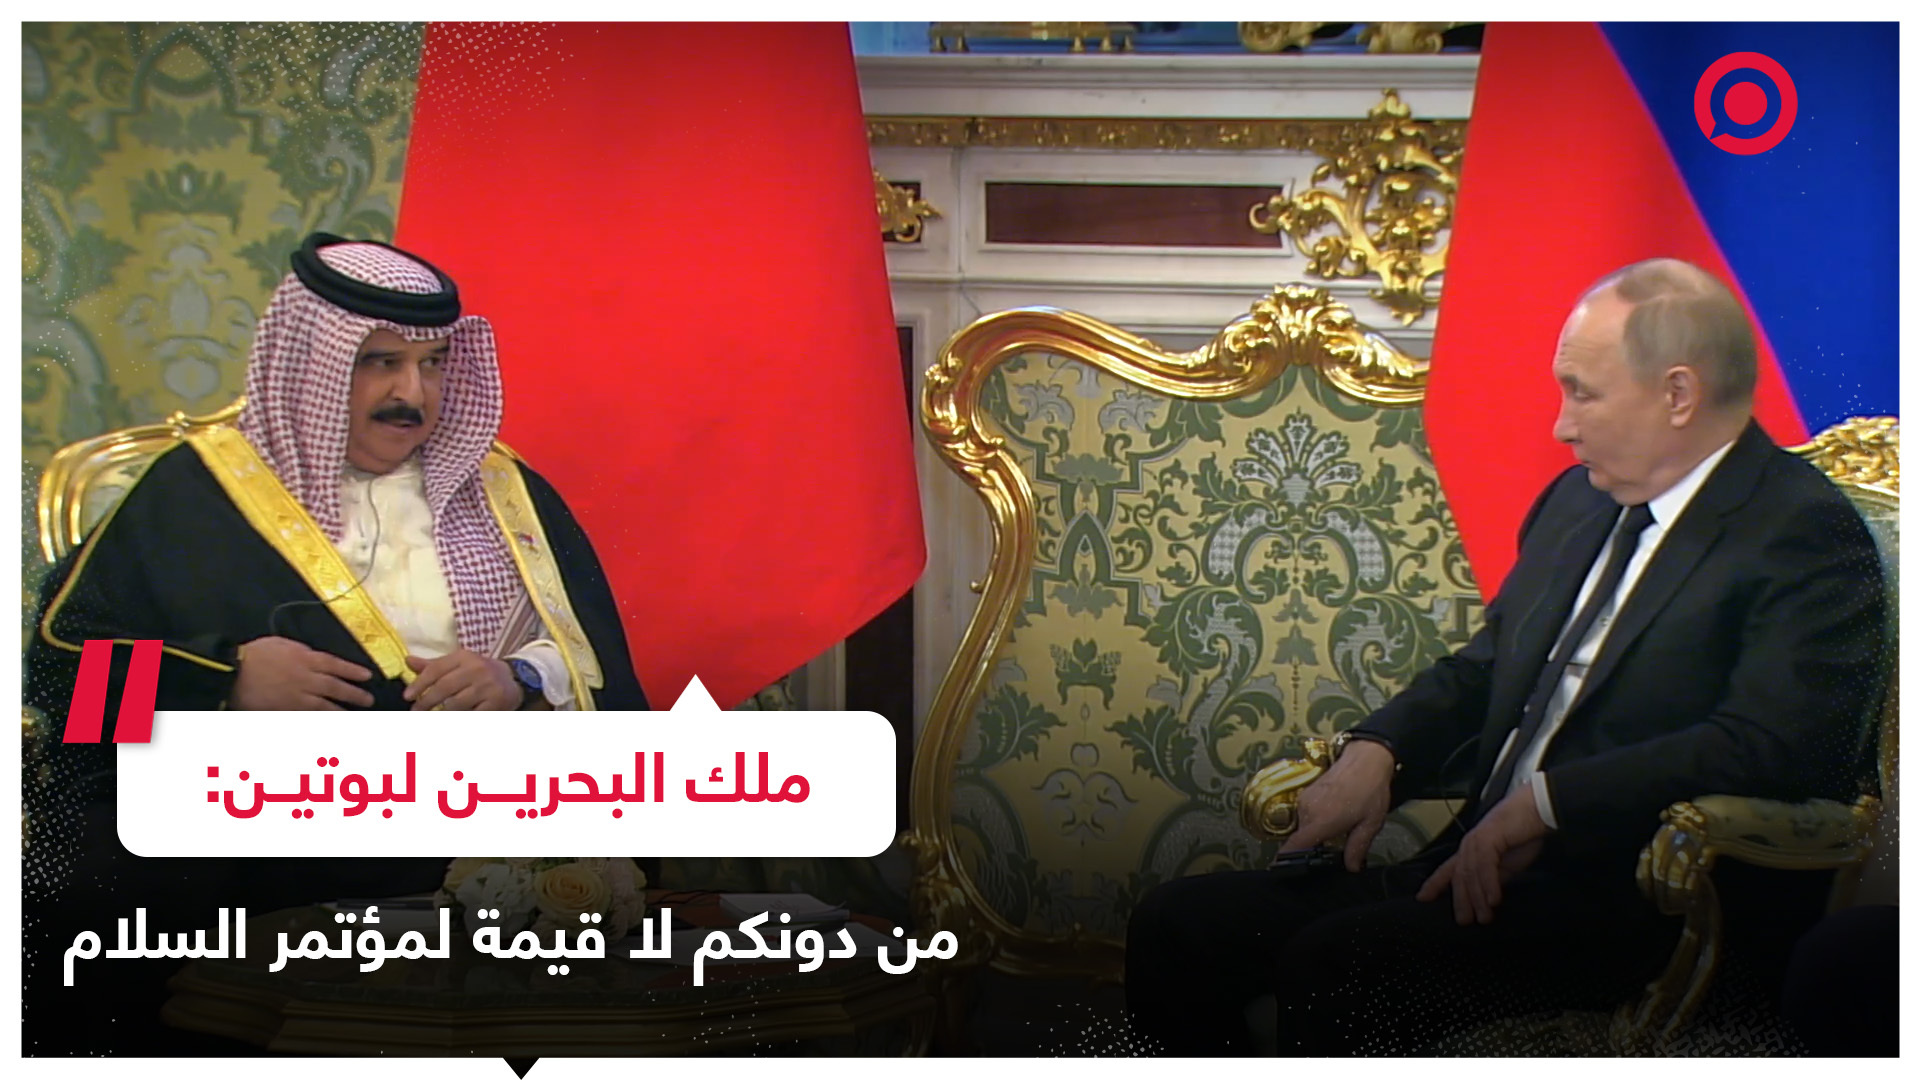 ملك البحرين لبوتين: من أهم أهداف الزيارة هو إطلاع  فخامتكم على نتائج القمة العربية